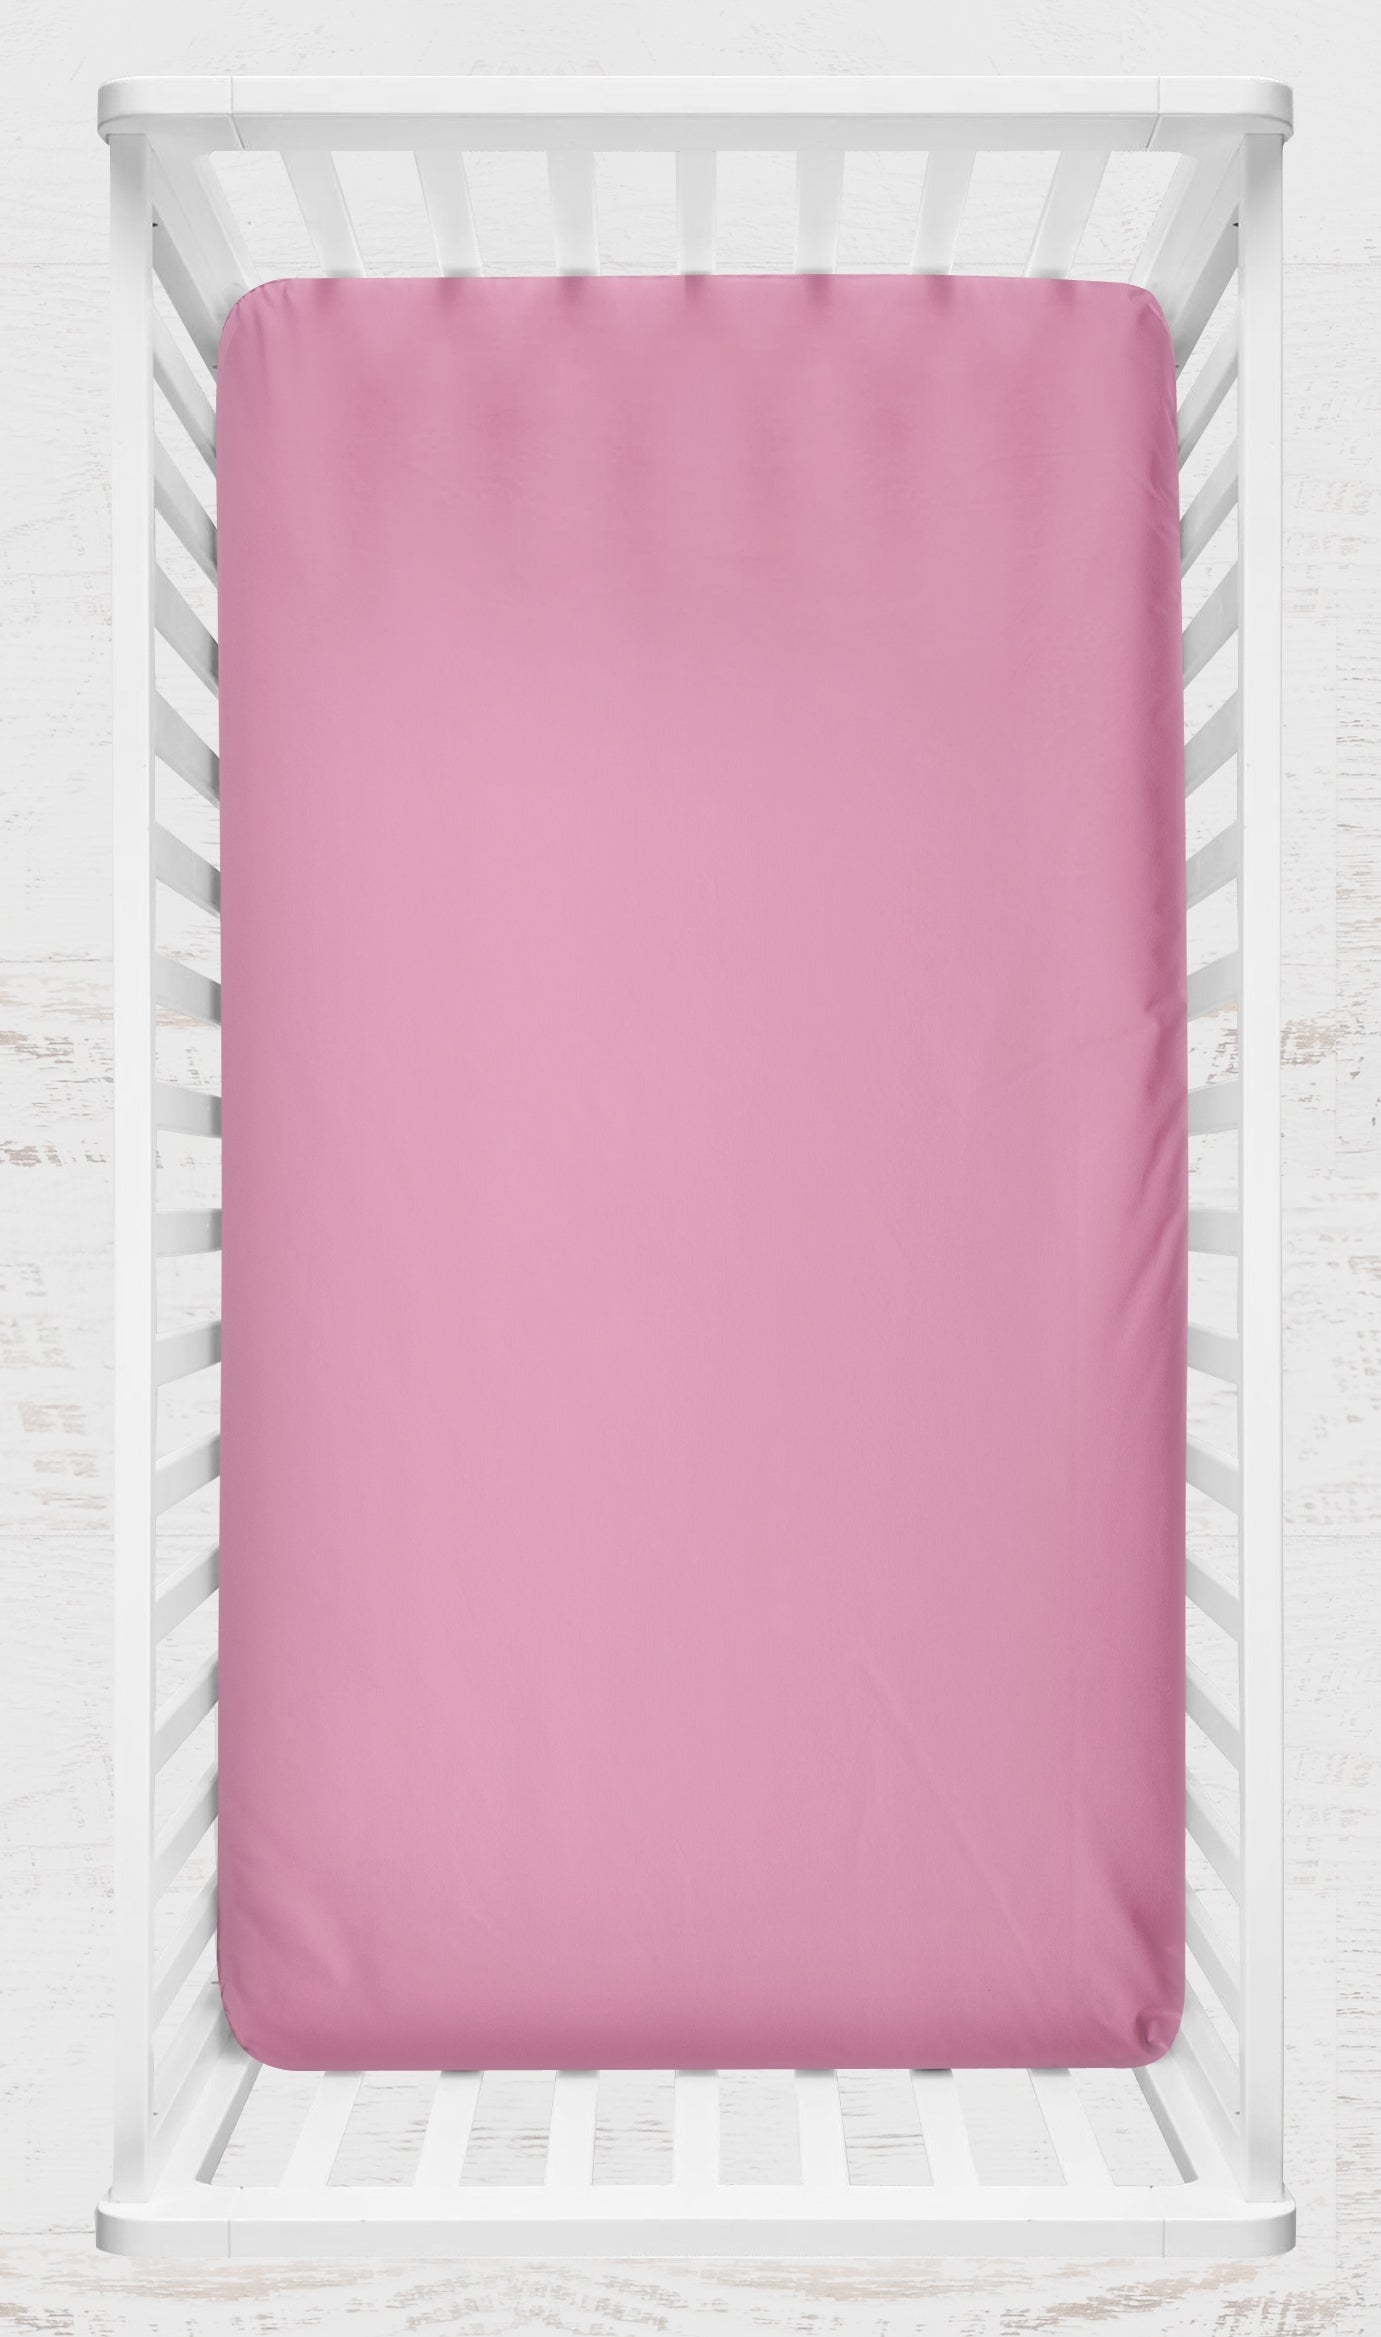 pink crib sheet shown on a crib